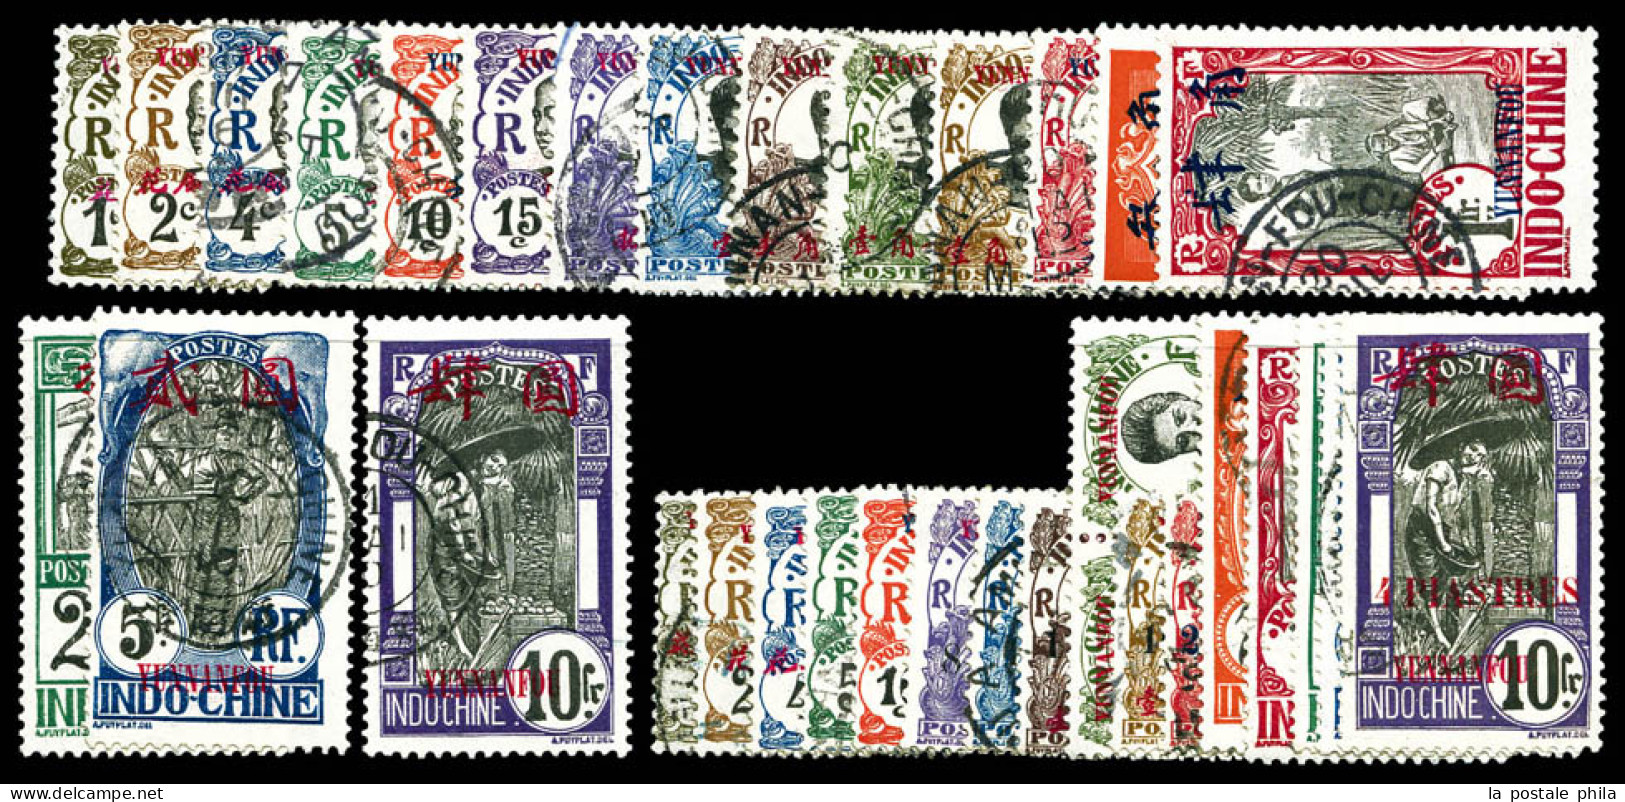 O N°33/66, Les 2 Séries (sf N°55). TTB (certificat)  Qualité: Oblitéré  Cote: 543 Euros - Used Stamps